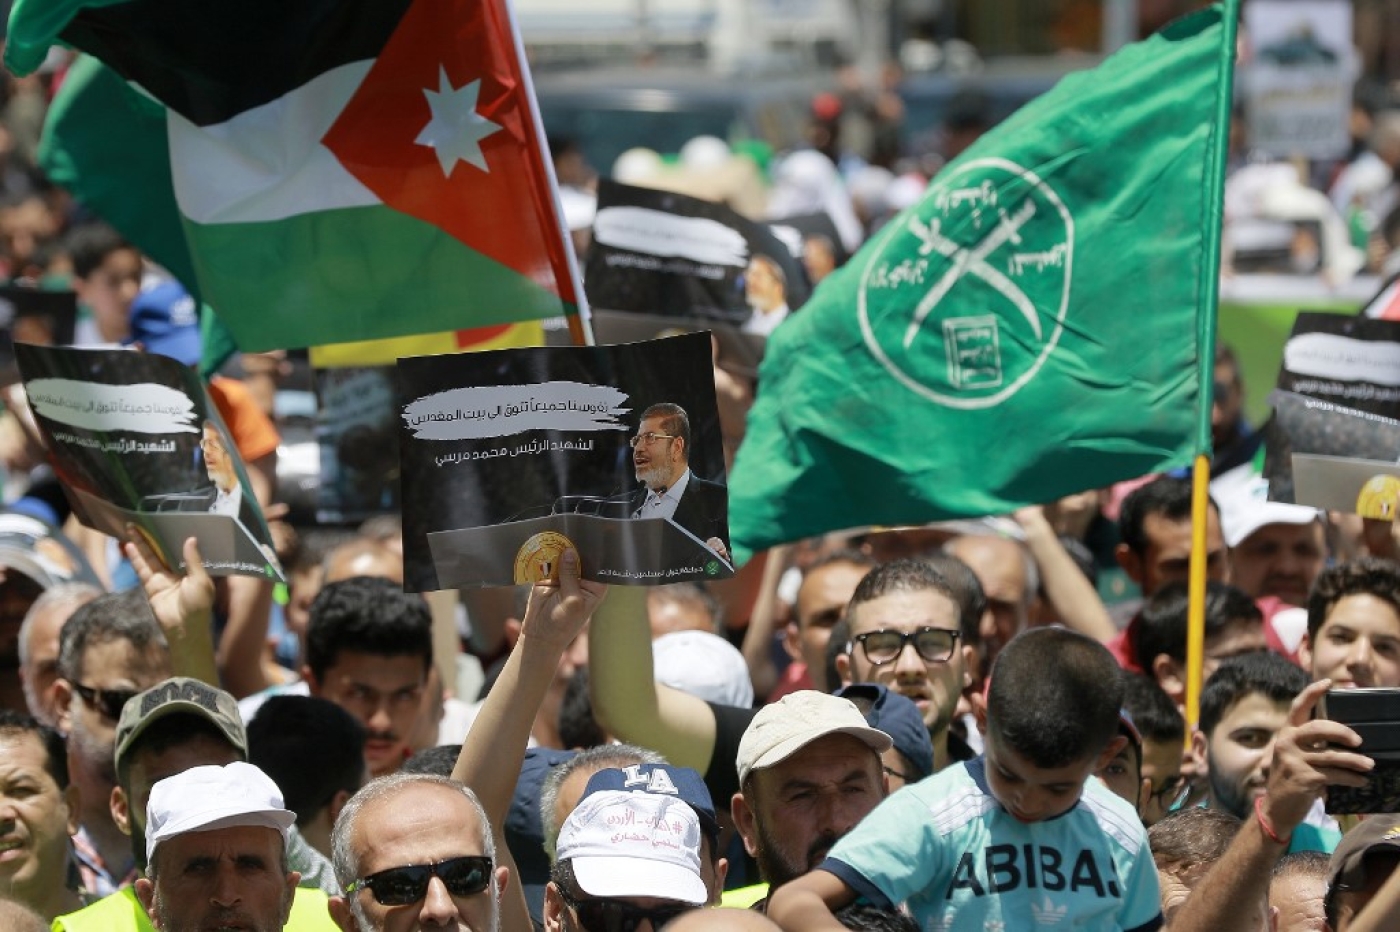 Le drapeau de la Jordanie (à gauche) et des Frères musulmans (à droite) apparaissent à côté d’une pancarte en l’honneur du président égyptien déchu, Mohamed Morsi, lors d’une manifestation à Amman, le 21 juin 2019, contre l’« accord du siècle » de Donald Trump (AFP)